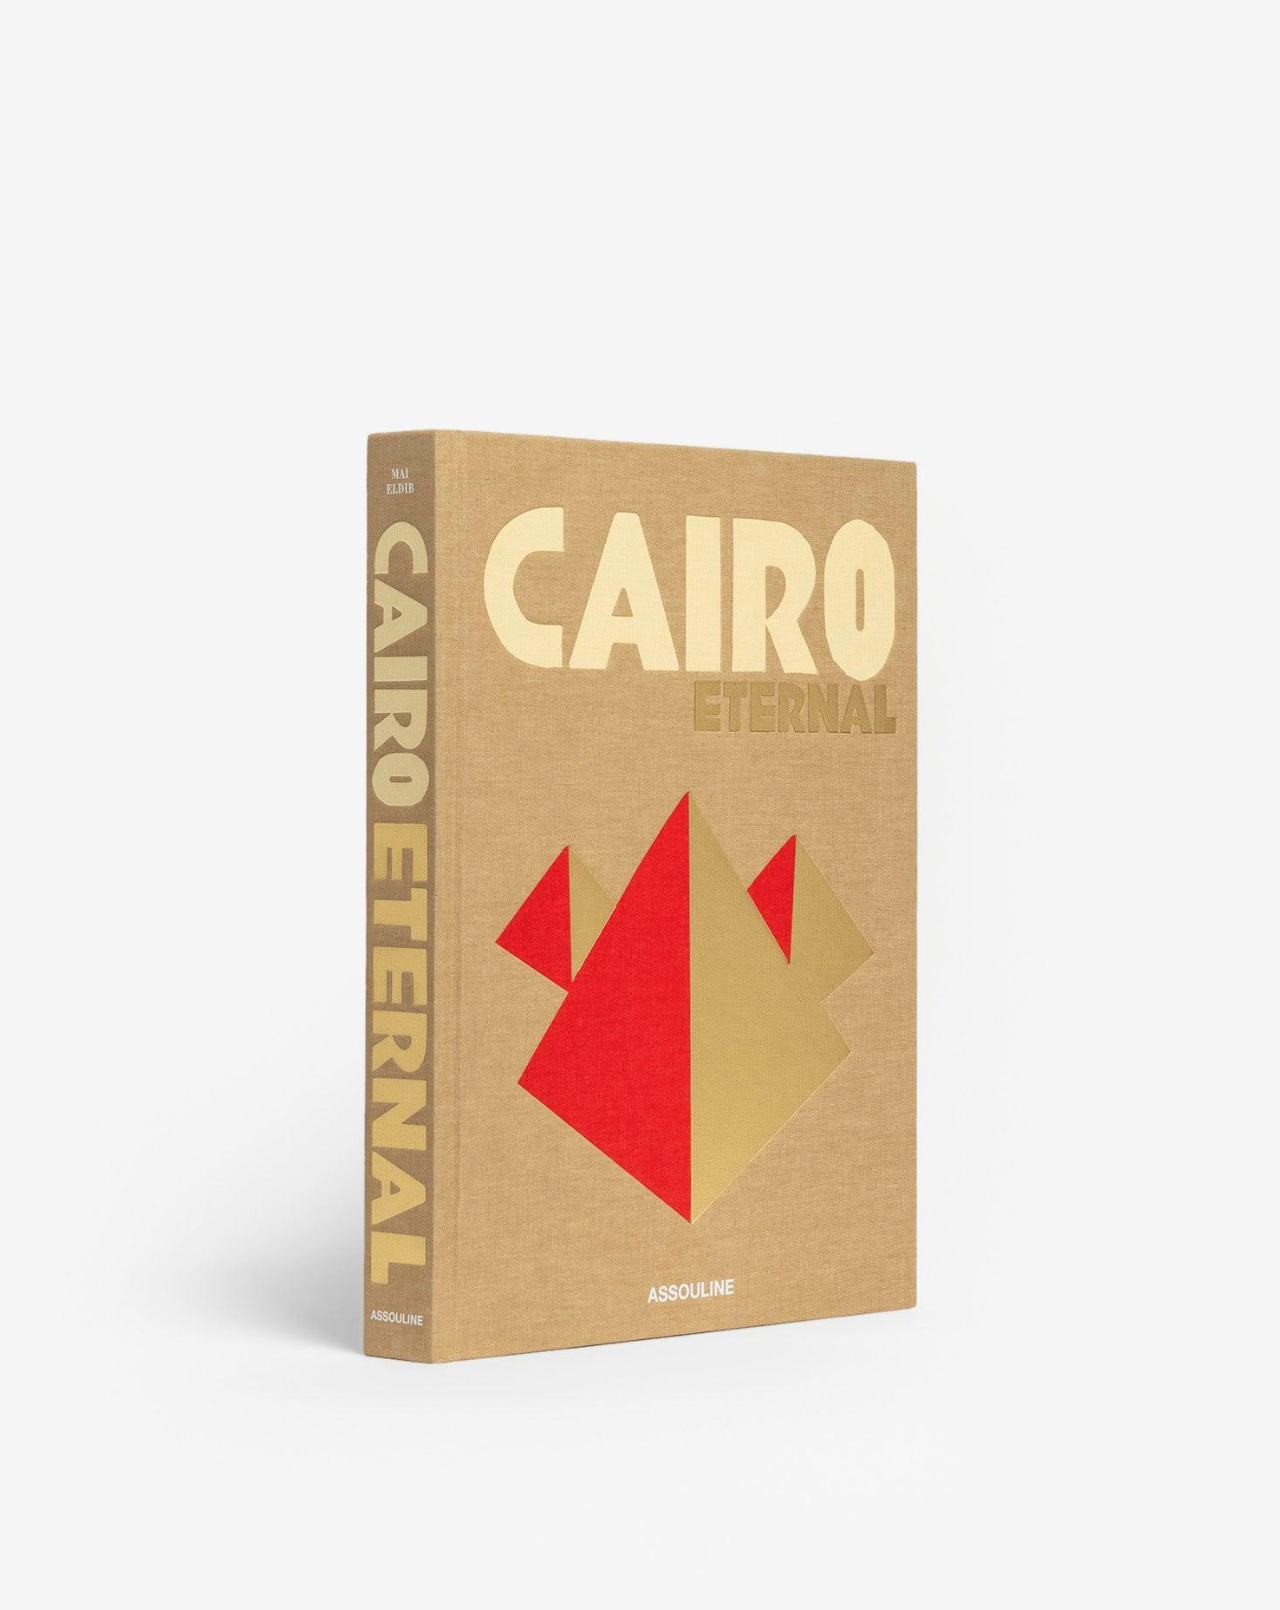 Cairo Eternal